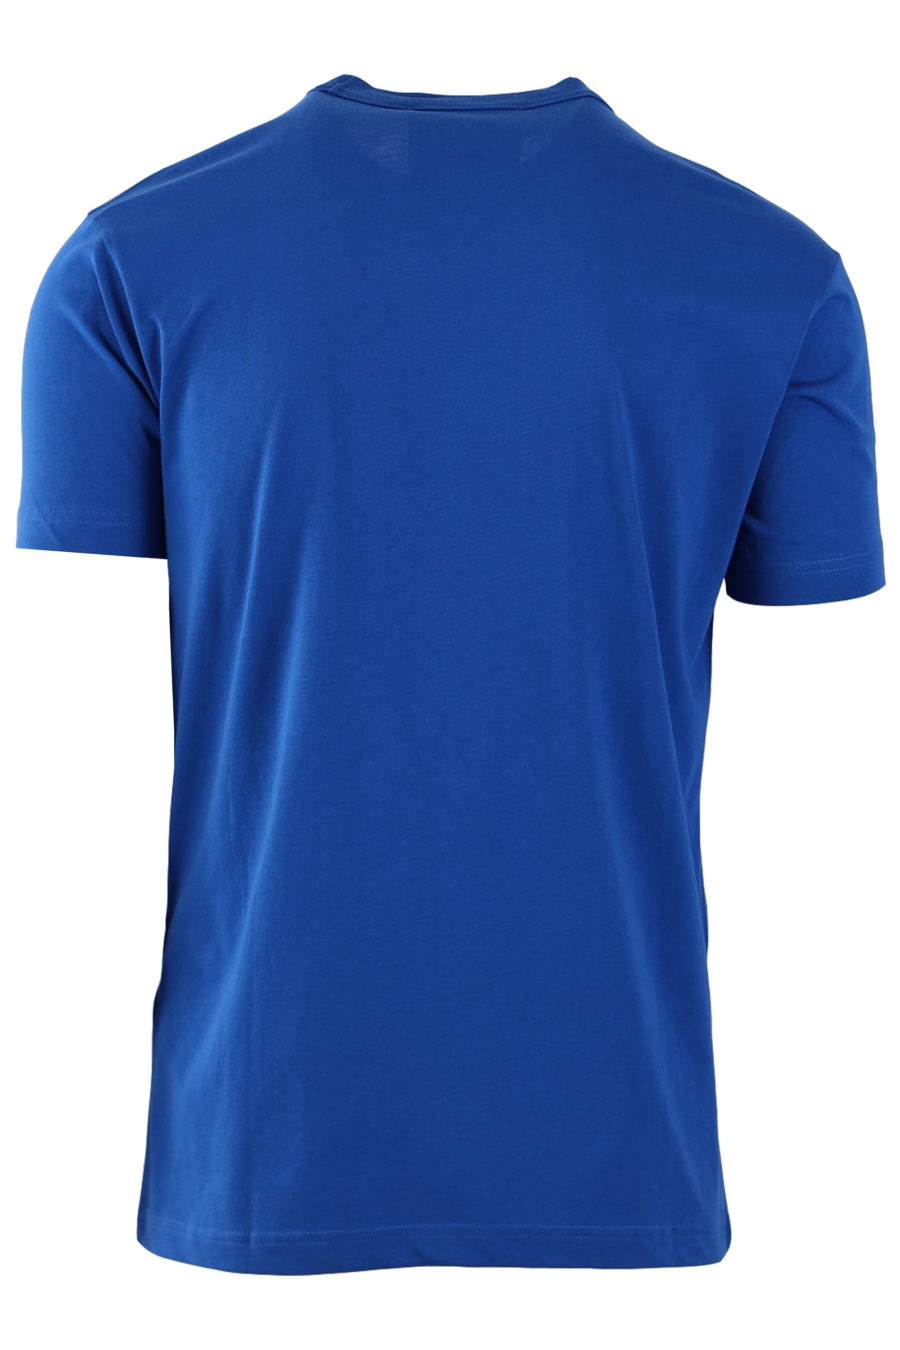 Camiseta azul con logotipo estampado engomado - c0976c8fc57fec42b29a1ffe87211498b5736947